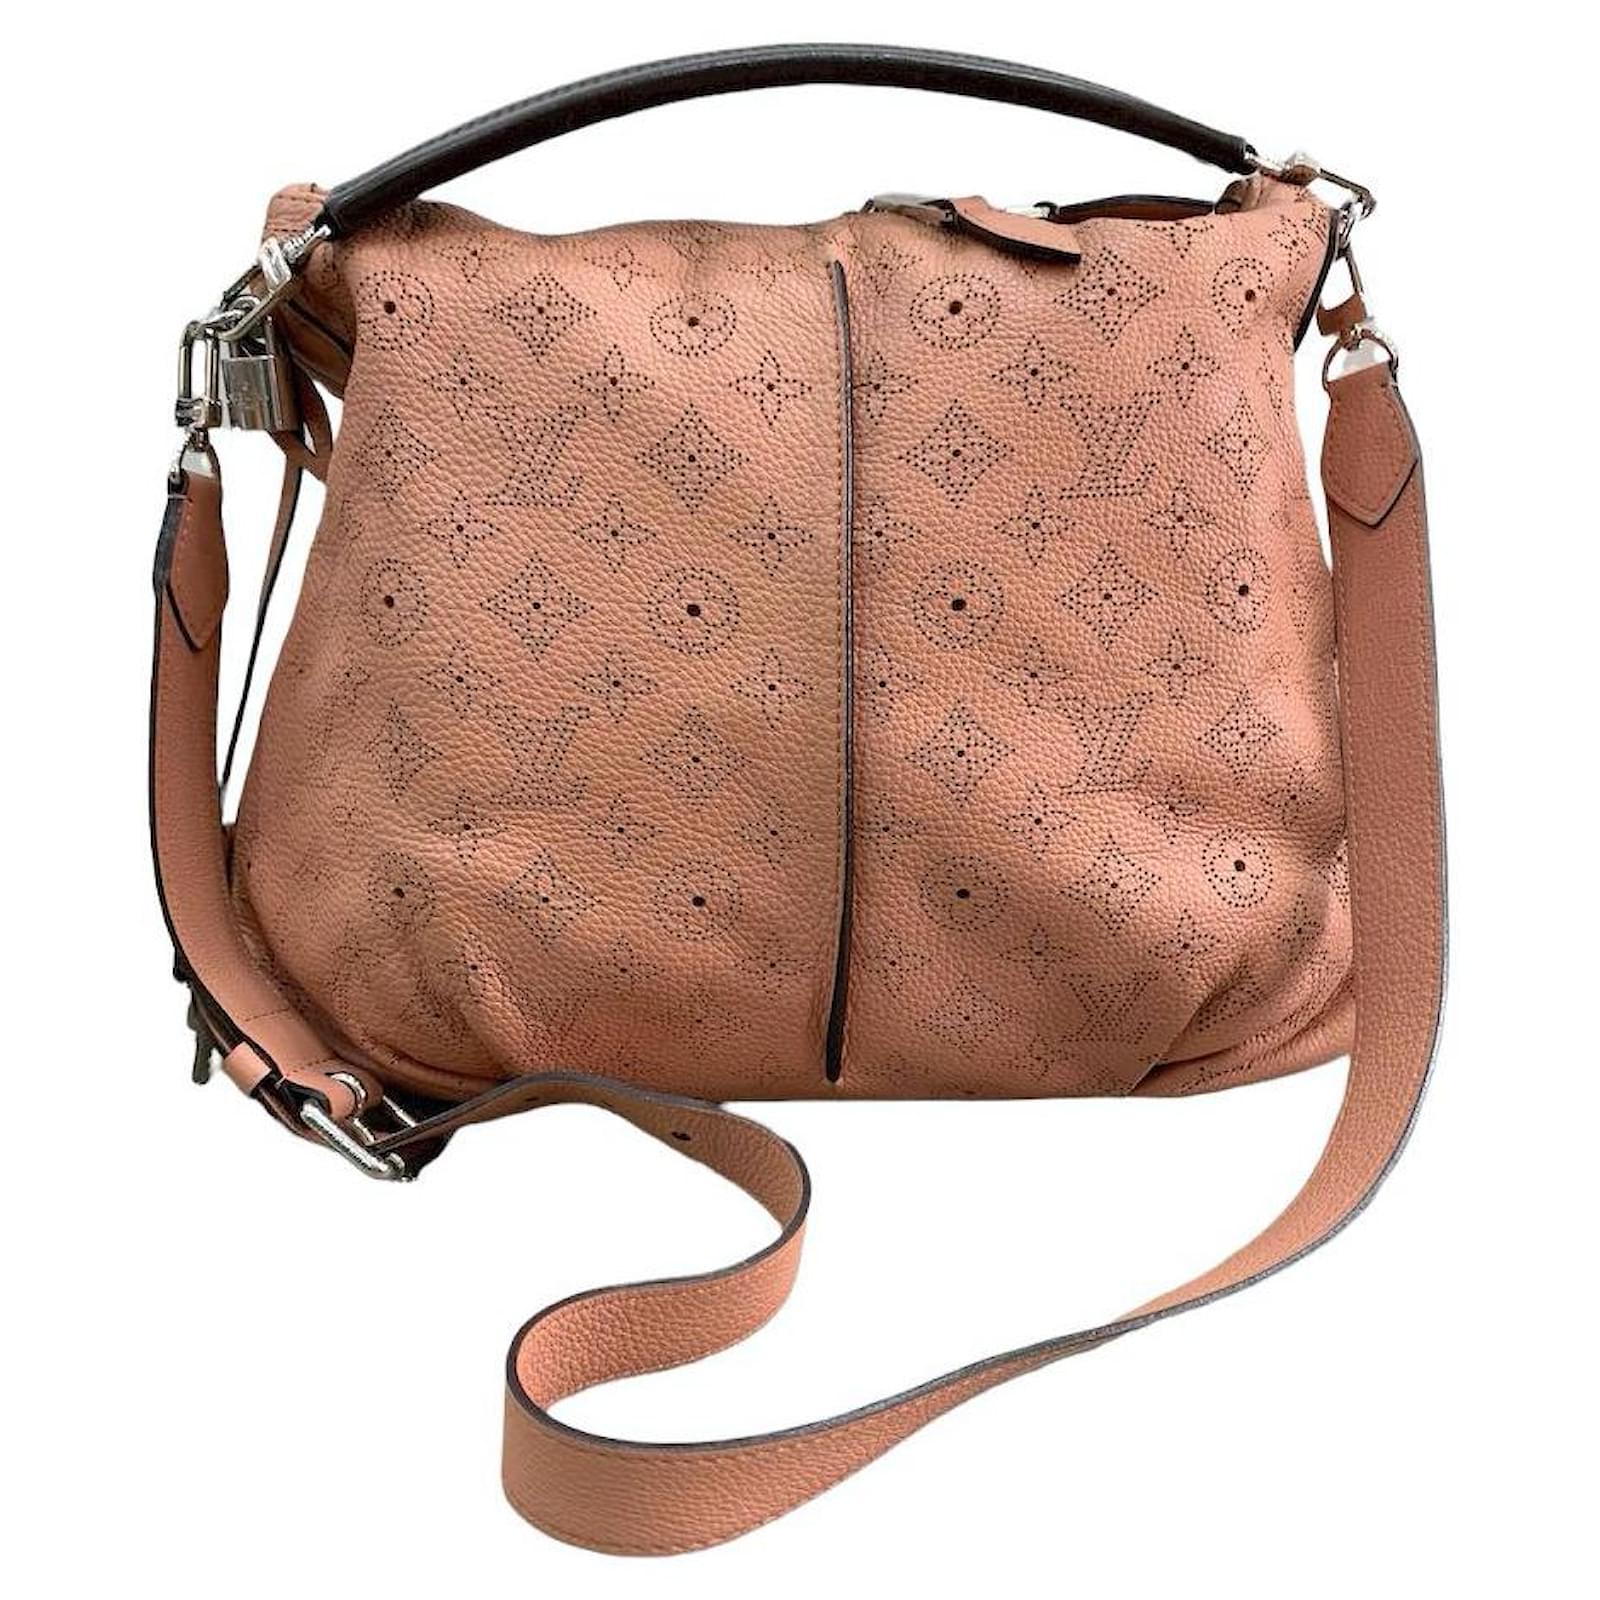 Louis Vuitton Perforated Mahina Selena Pm Bag